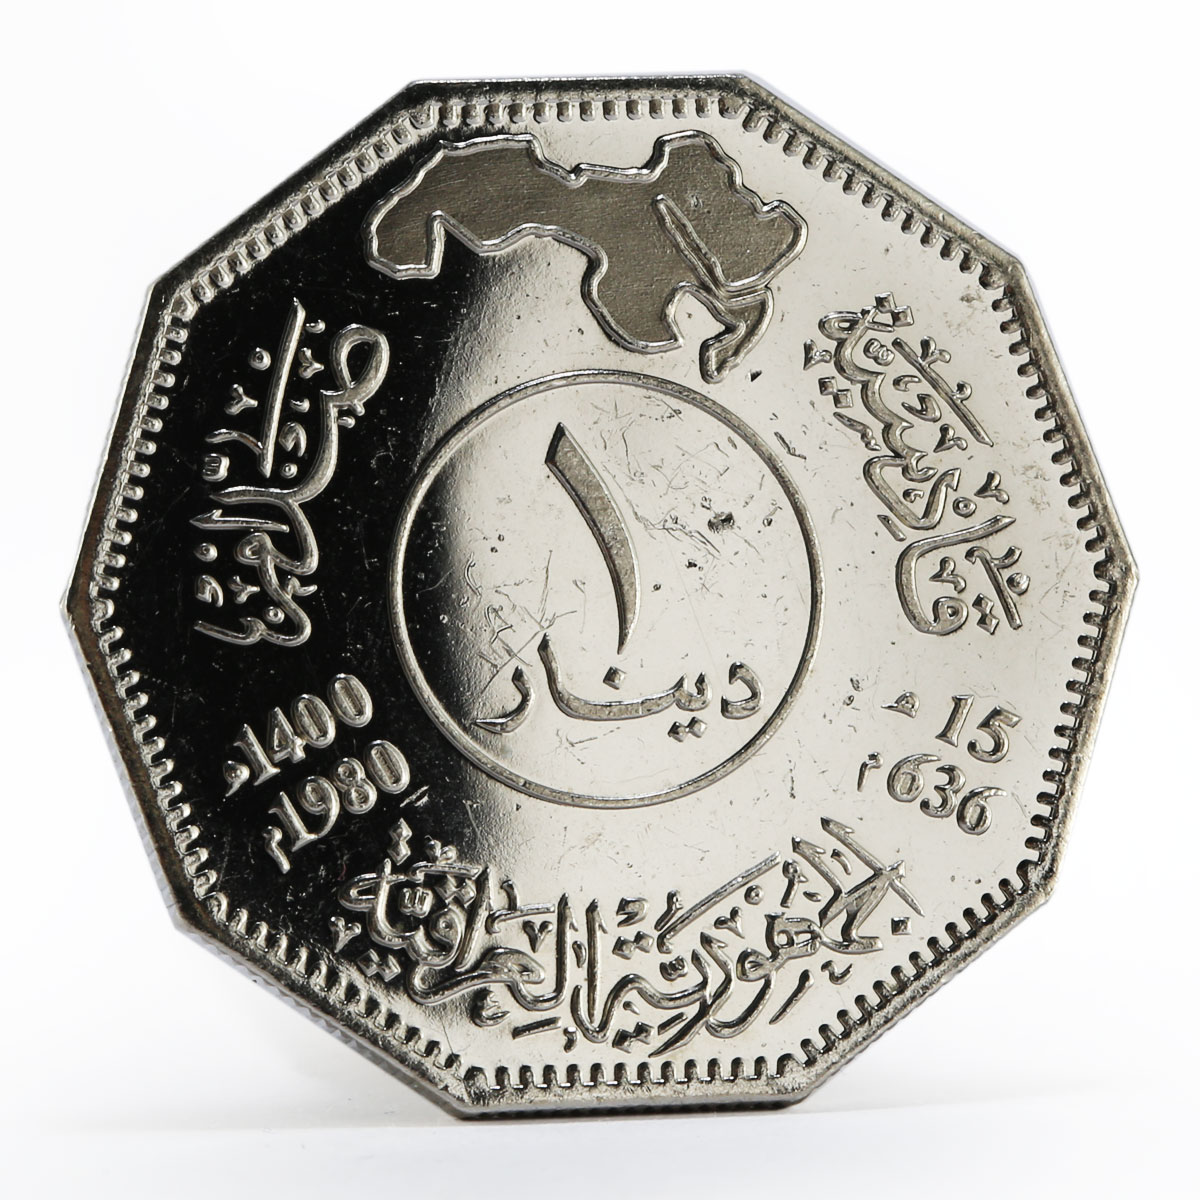 Iraq 1 dinar Battle of Qadissyiat nickel coin 1980